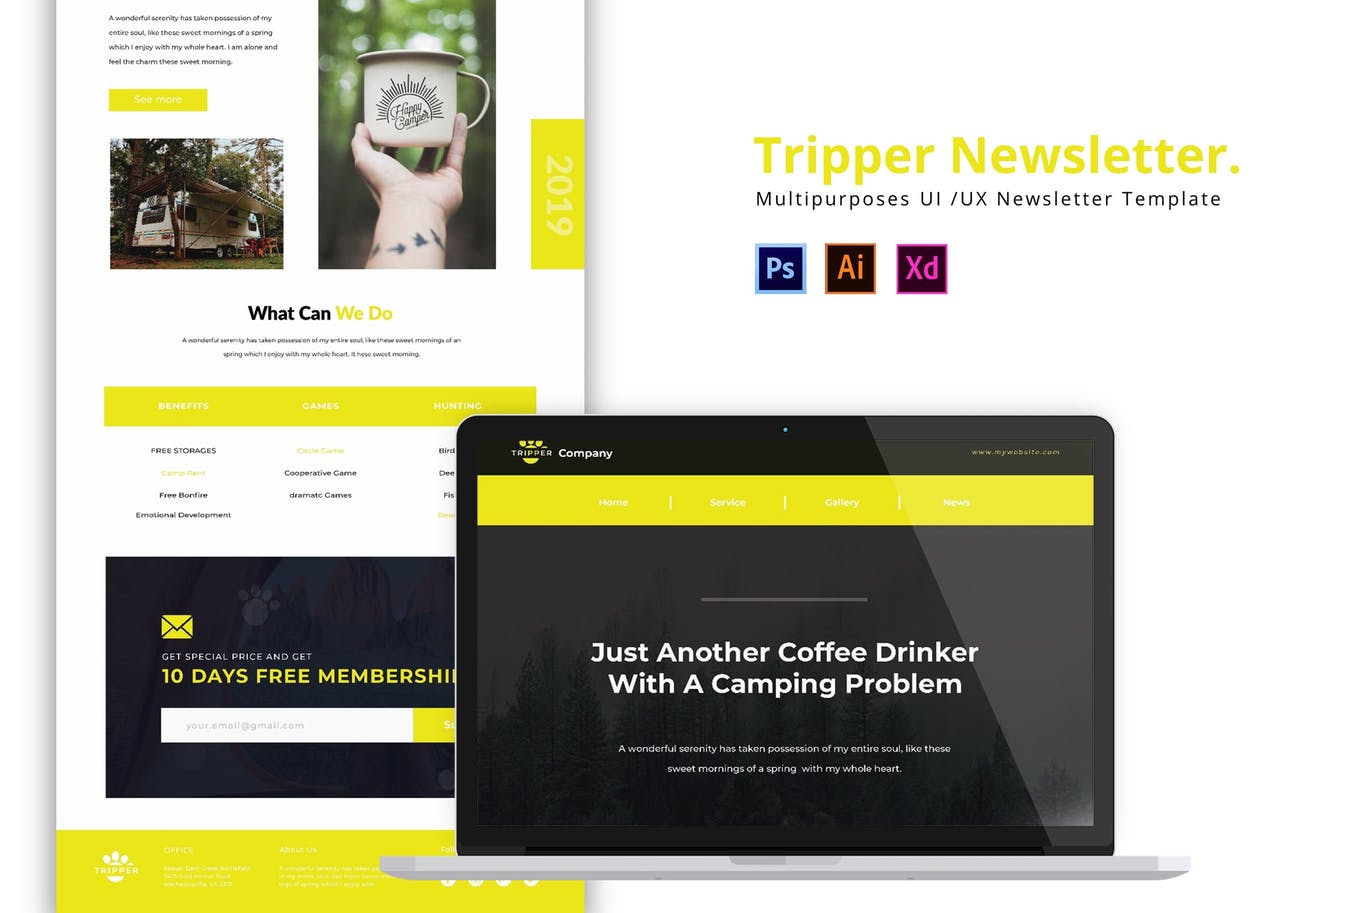 户外野营品牌网站邮件订阅设计模板 Tripper Newsletter插图